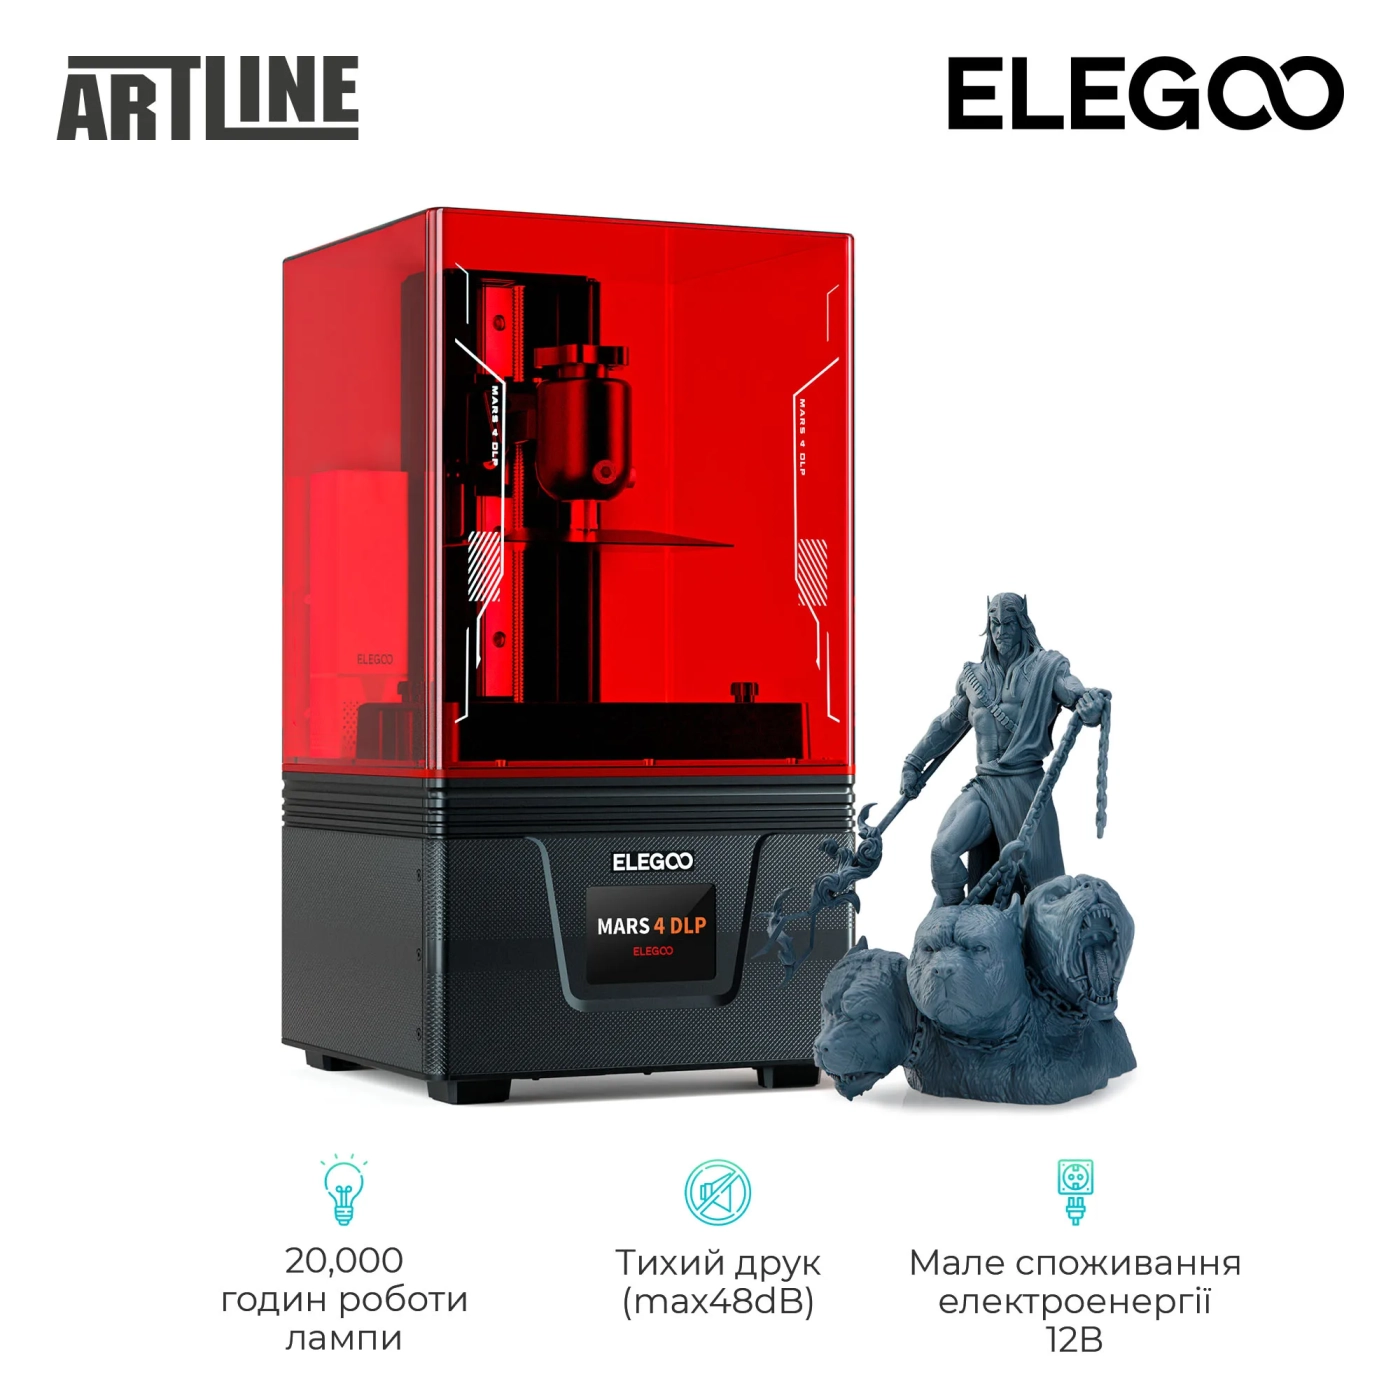 Купить 3D-принтер ELEGOO Mars 4 DLP - фото 3